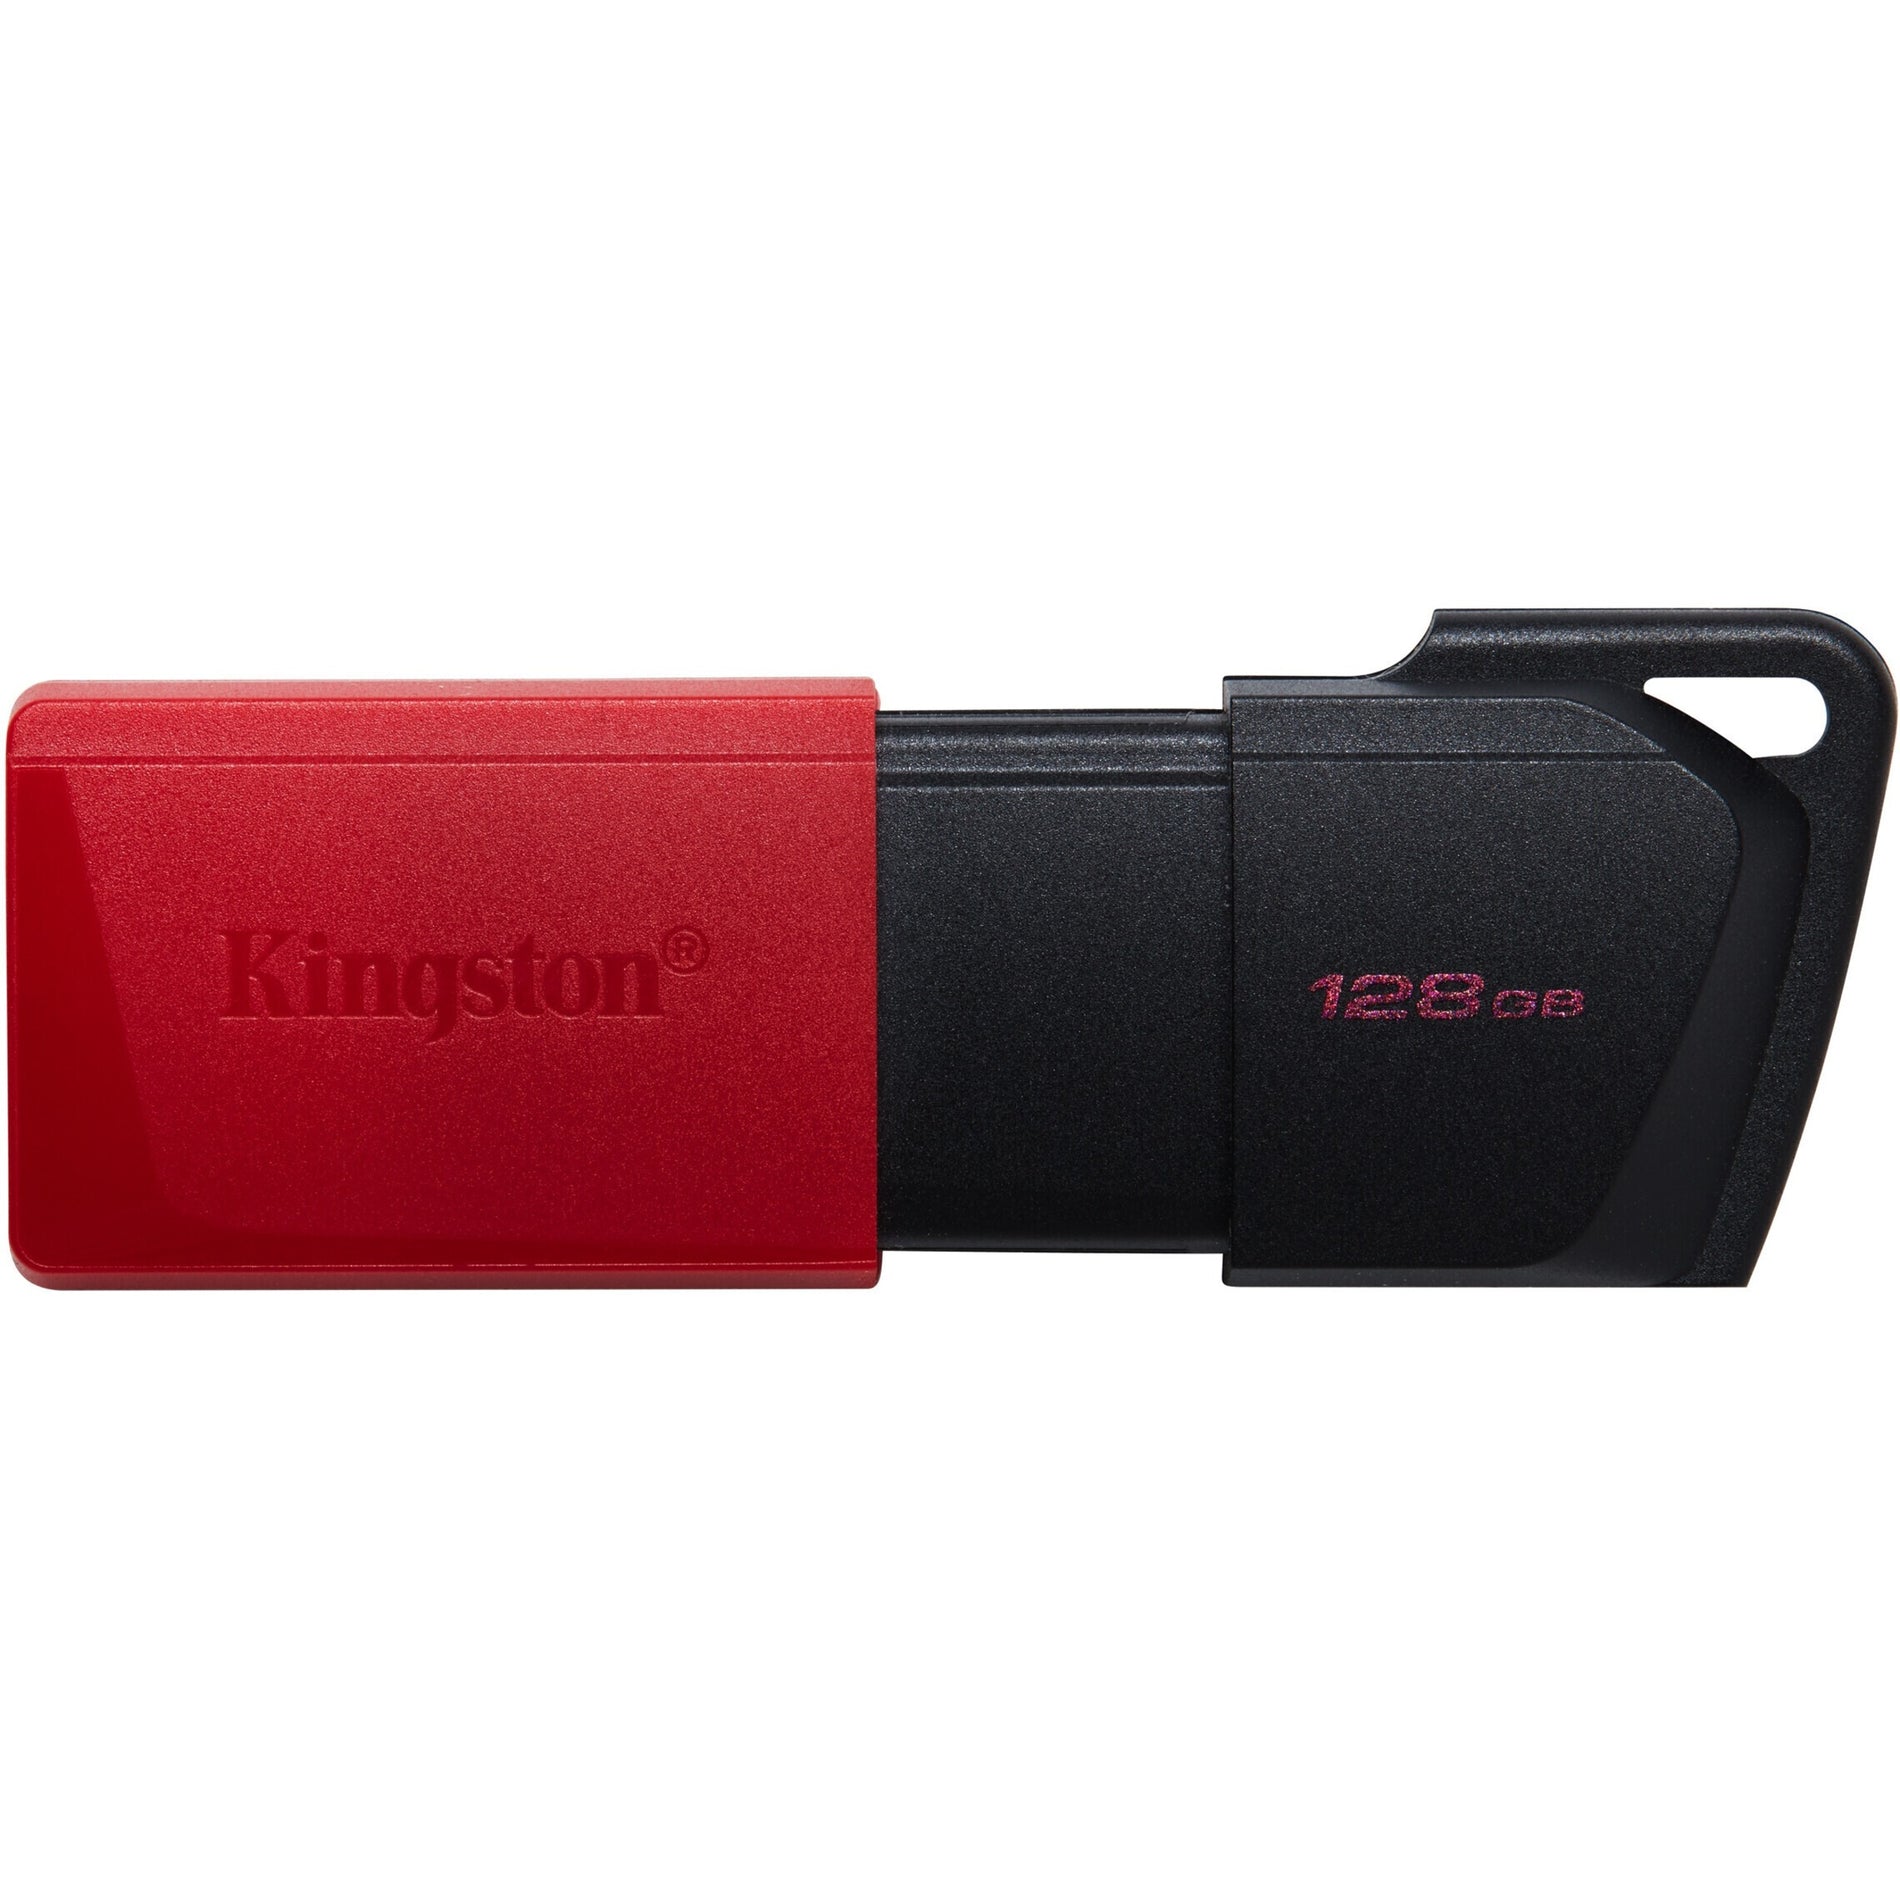 킹스턴 DTXM/128GB 데이터트래블러 엑소디아 M USB 플래시 드라이브 128GB 저장 용량 가벼운 무게 슬라이딩 캡 키링 휴대용